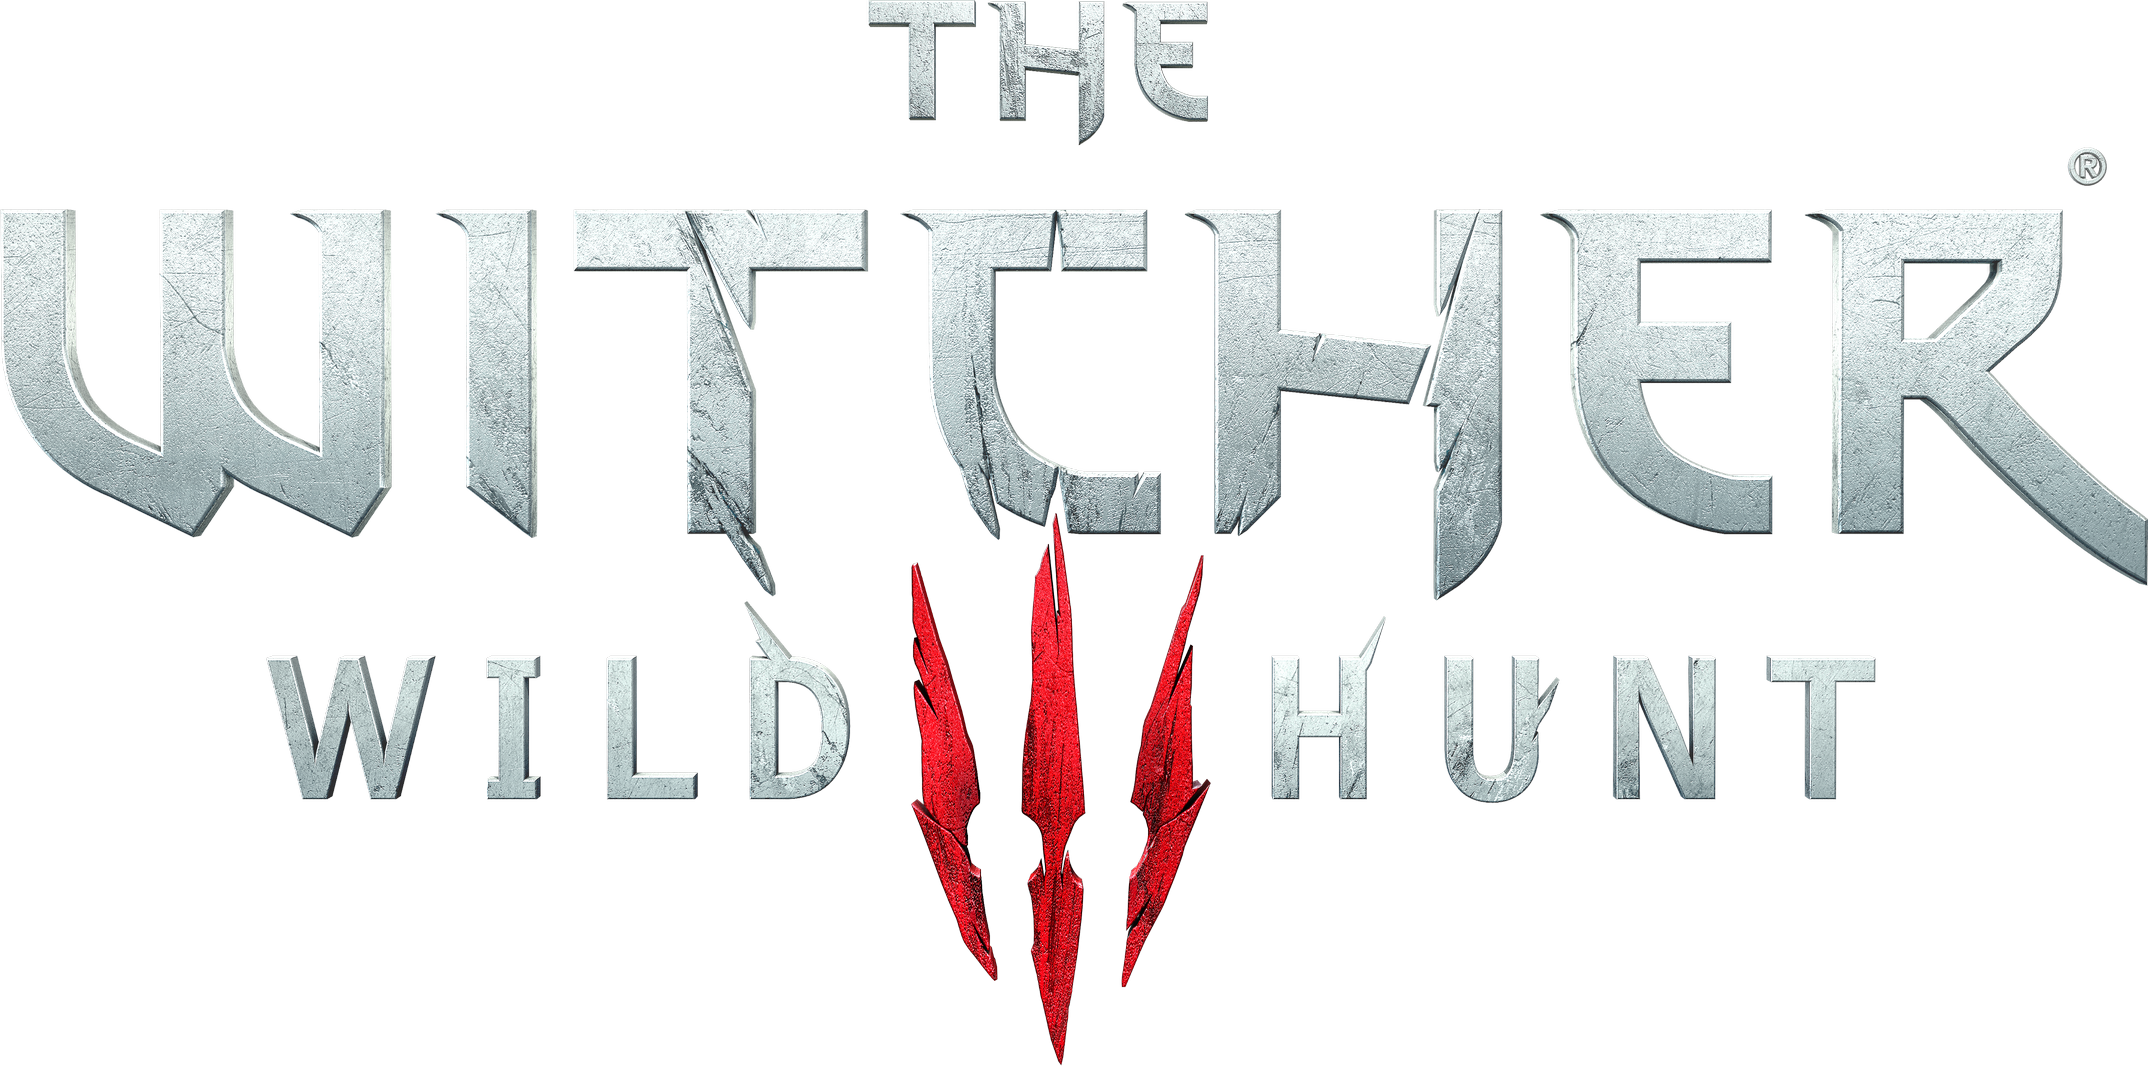 Witcher Logo